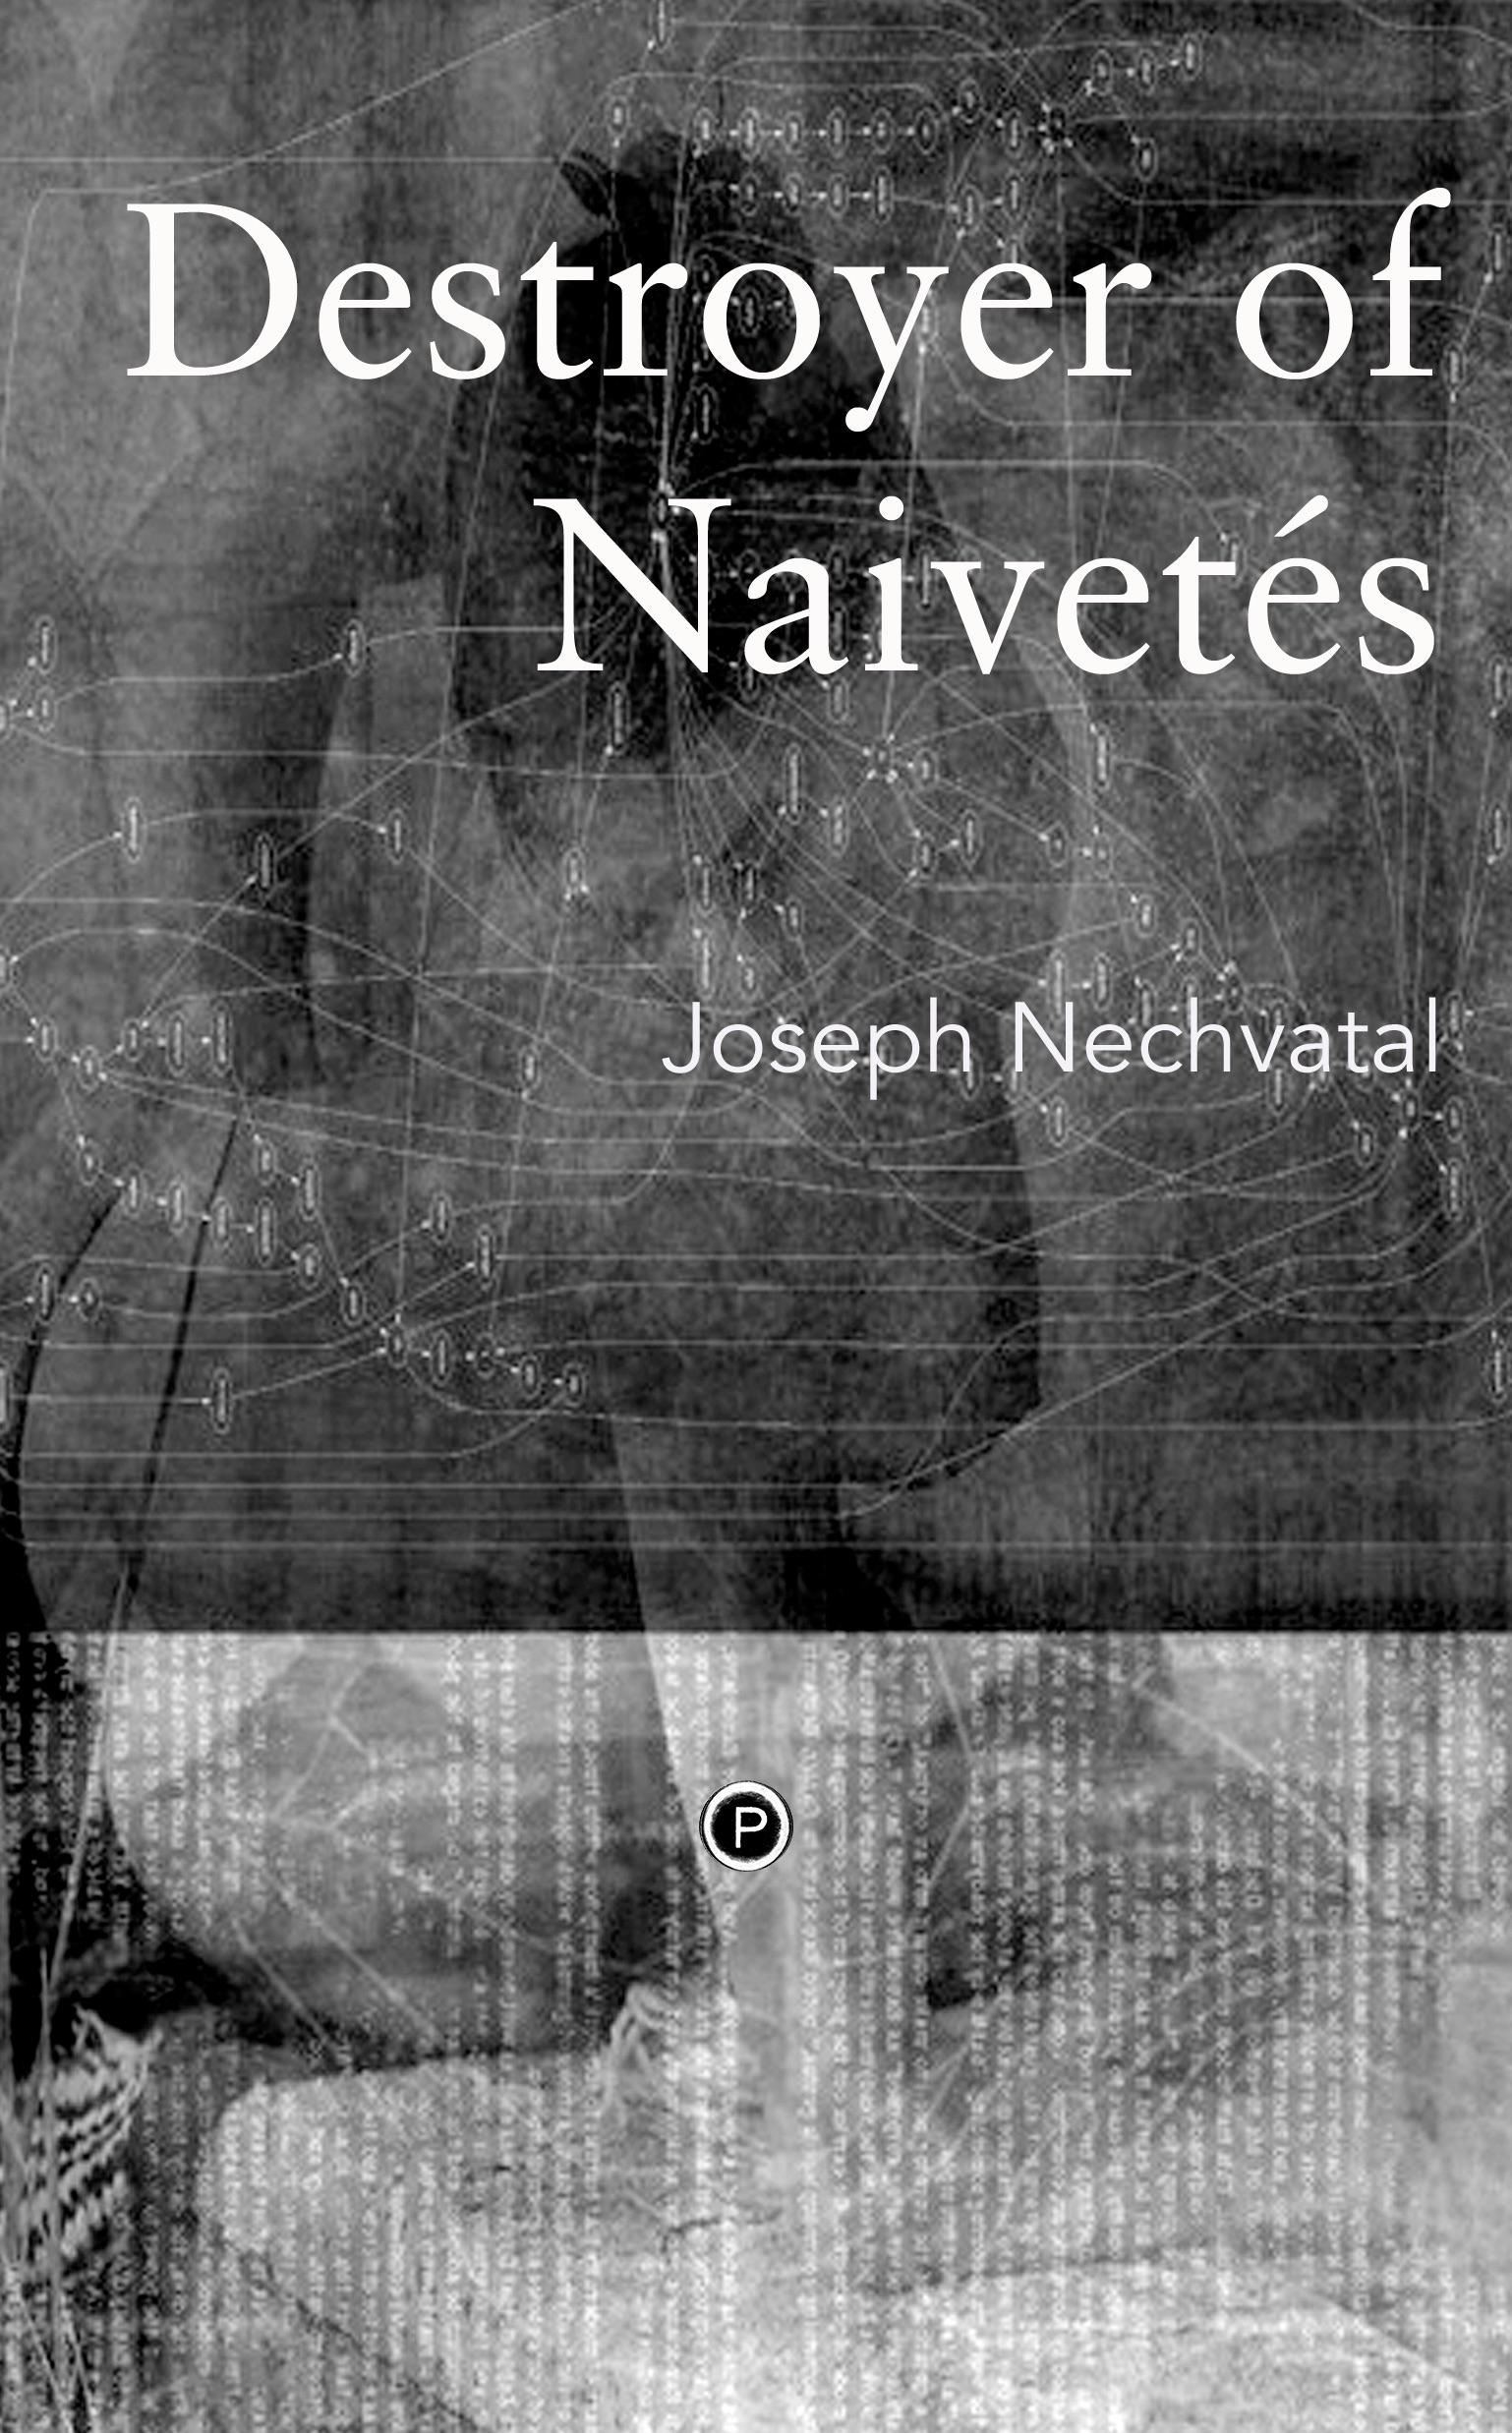 Destroyer of Naivetés (punctum books, 2015)